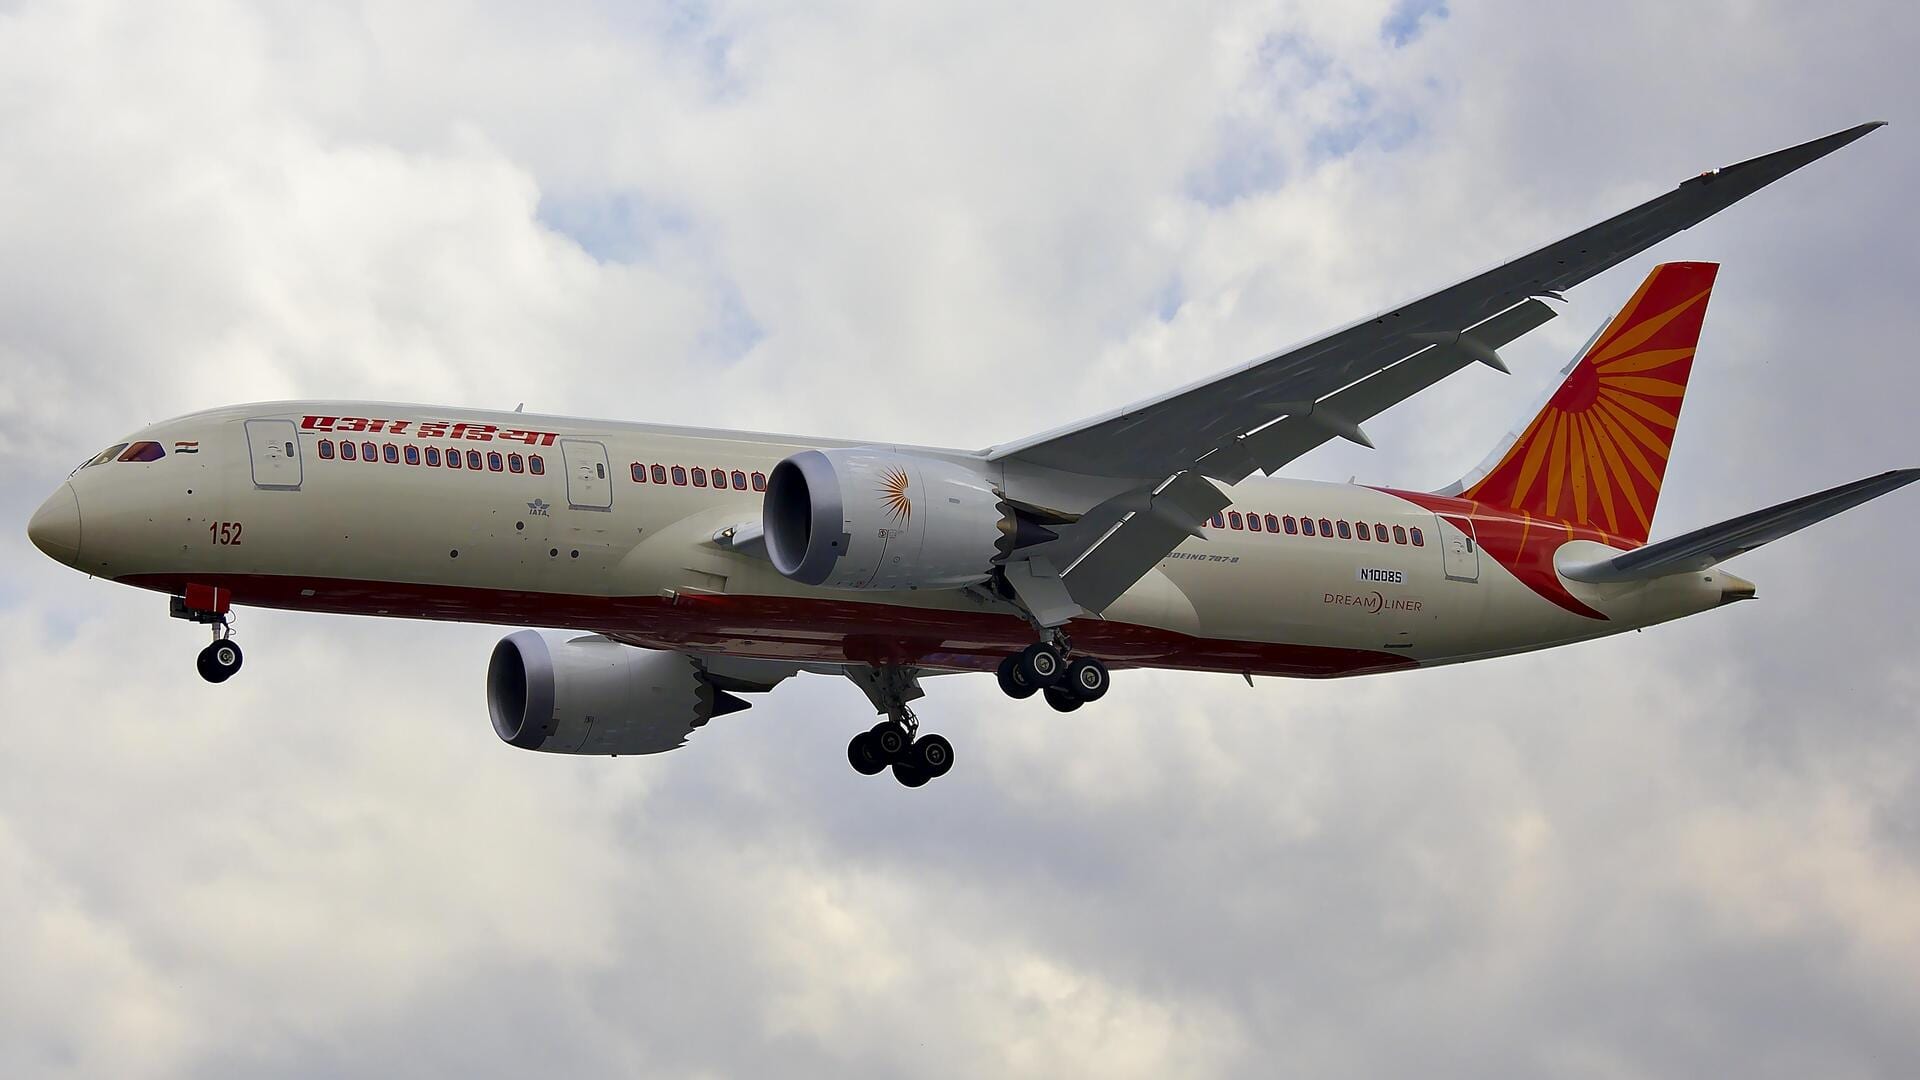 लंदन जा रही एयर इंडिया की फ्लाइट में यात्री ने की चालक दल के साथ मारपीट